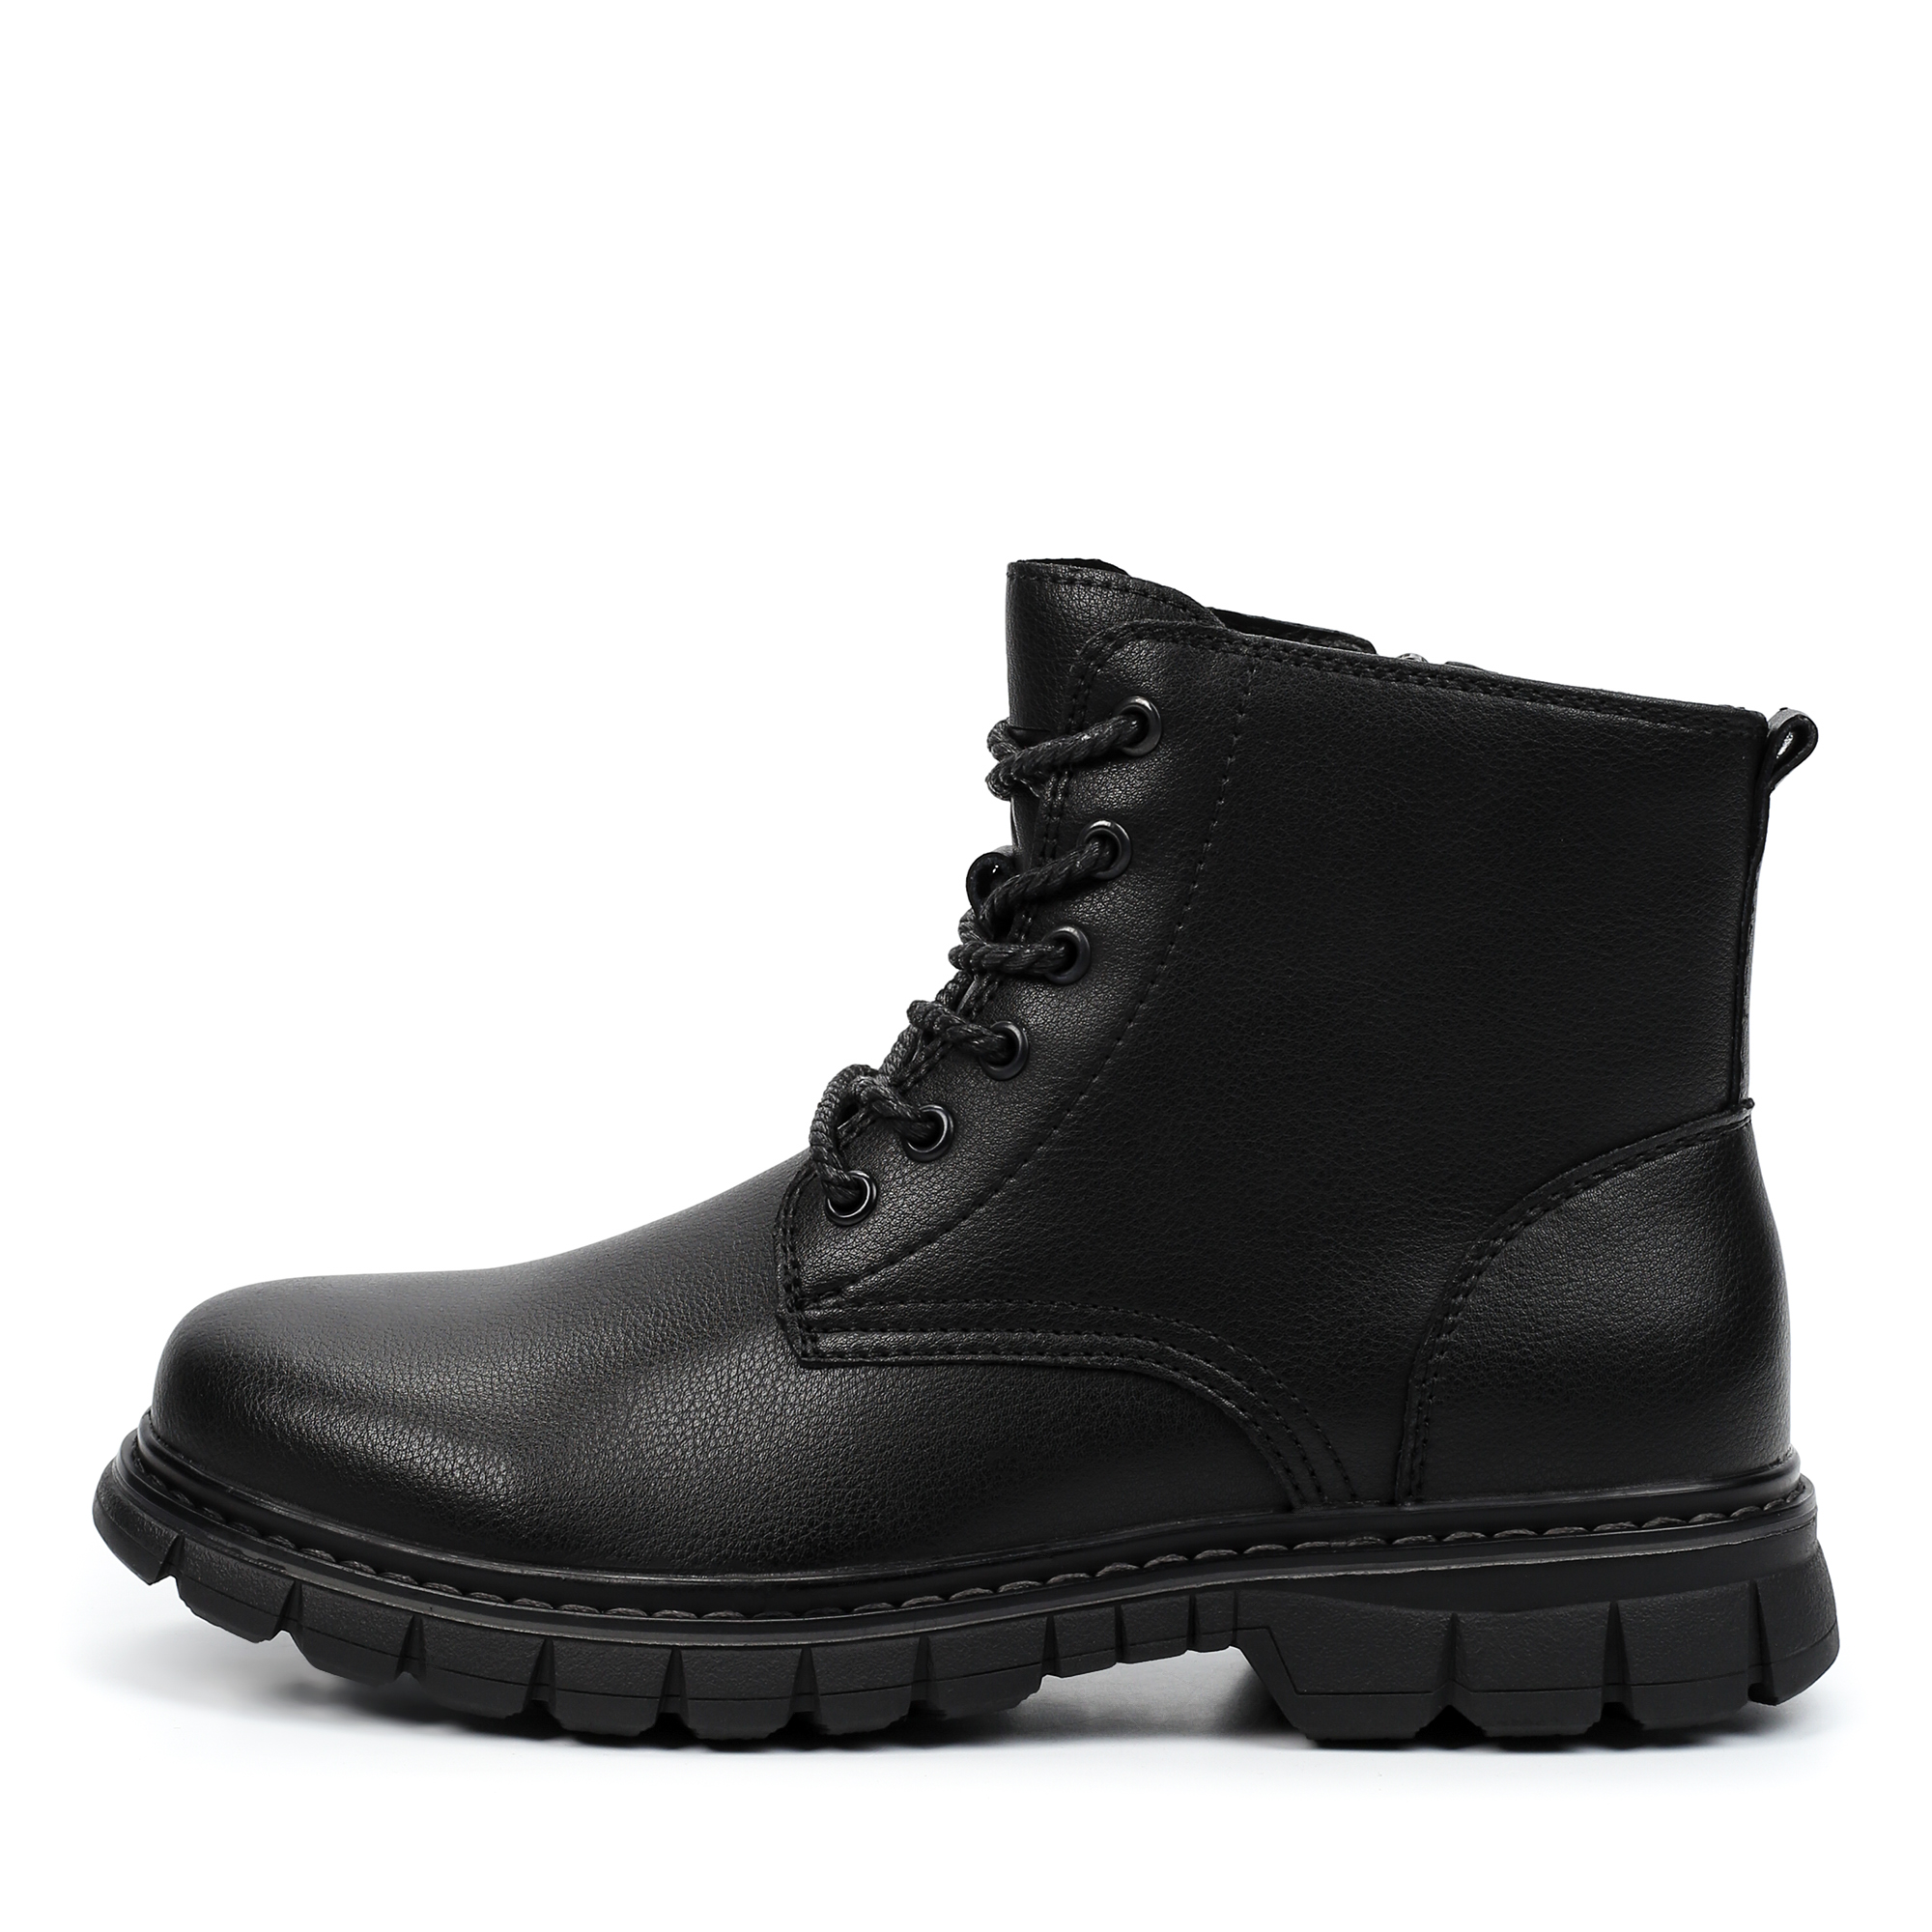 Ботинки MUNZ YOUNG 116-421A-2602, цвет черный, размер 37